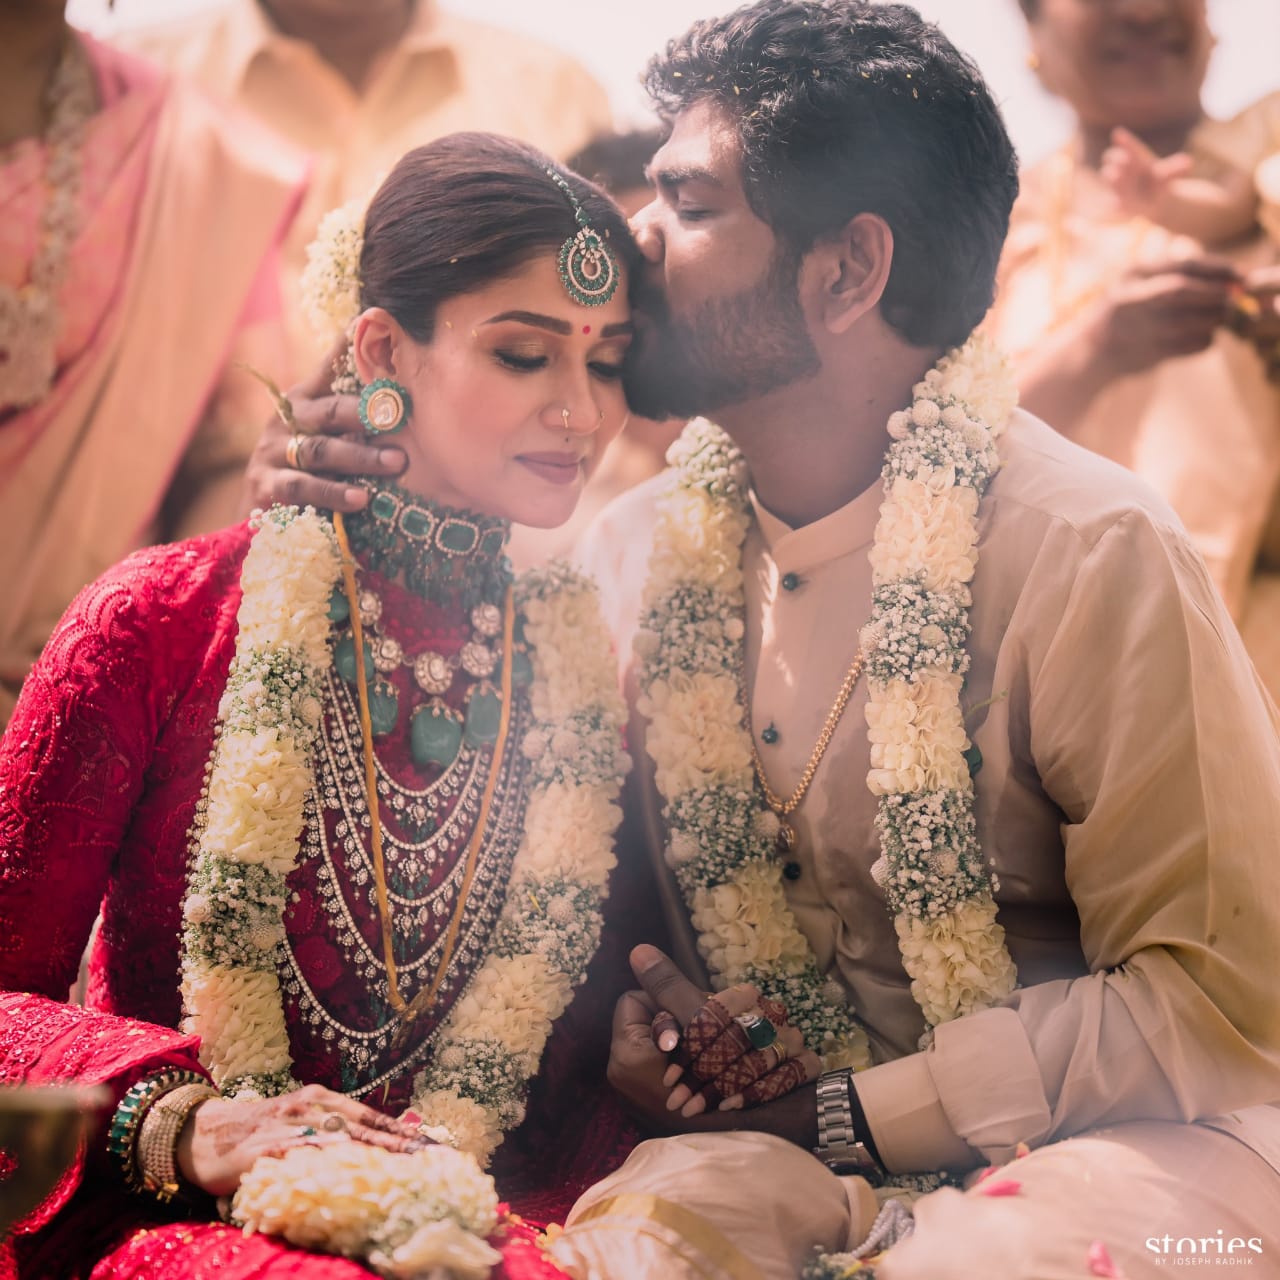 Nayanthara Vignesh Shivan Wedding Viral Photos & Moments